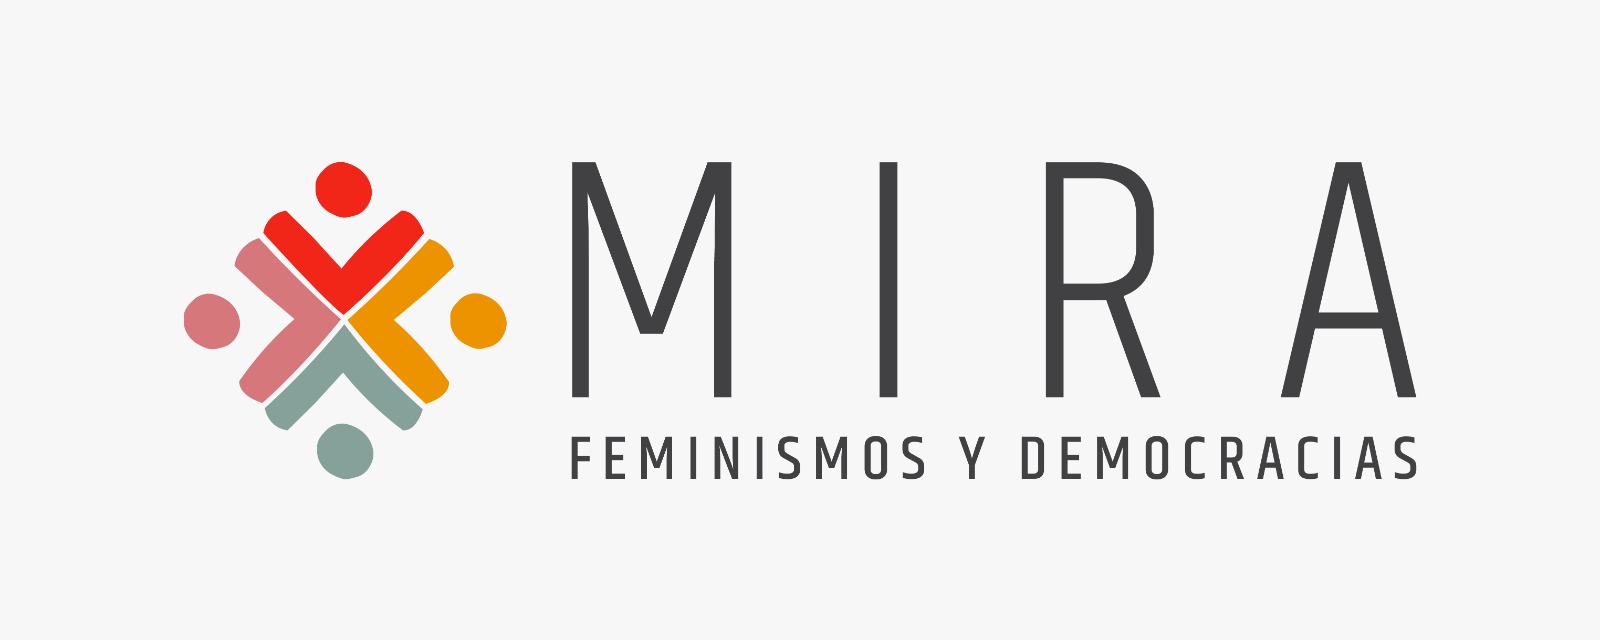 MIRA: FEMINISMOS Y DEMOCRACIAS
